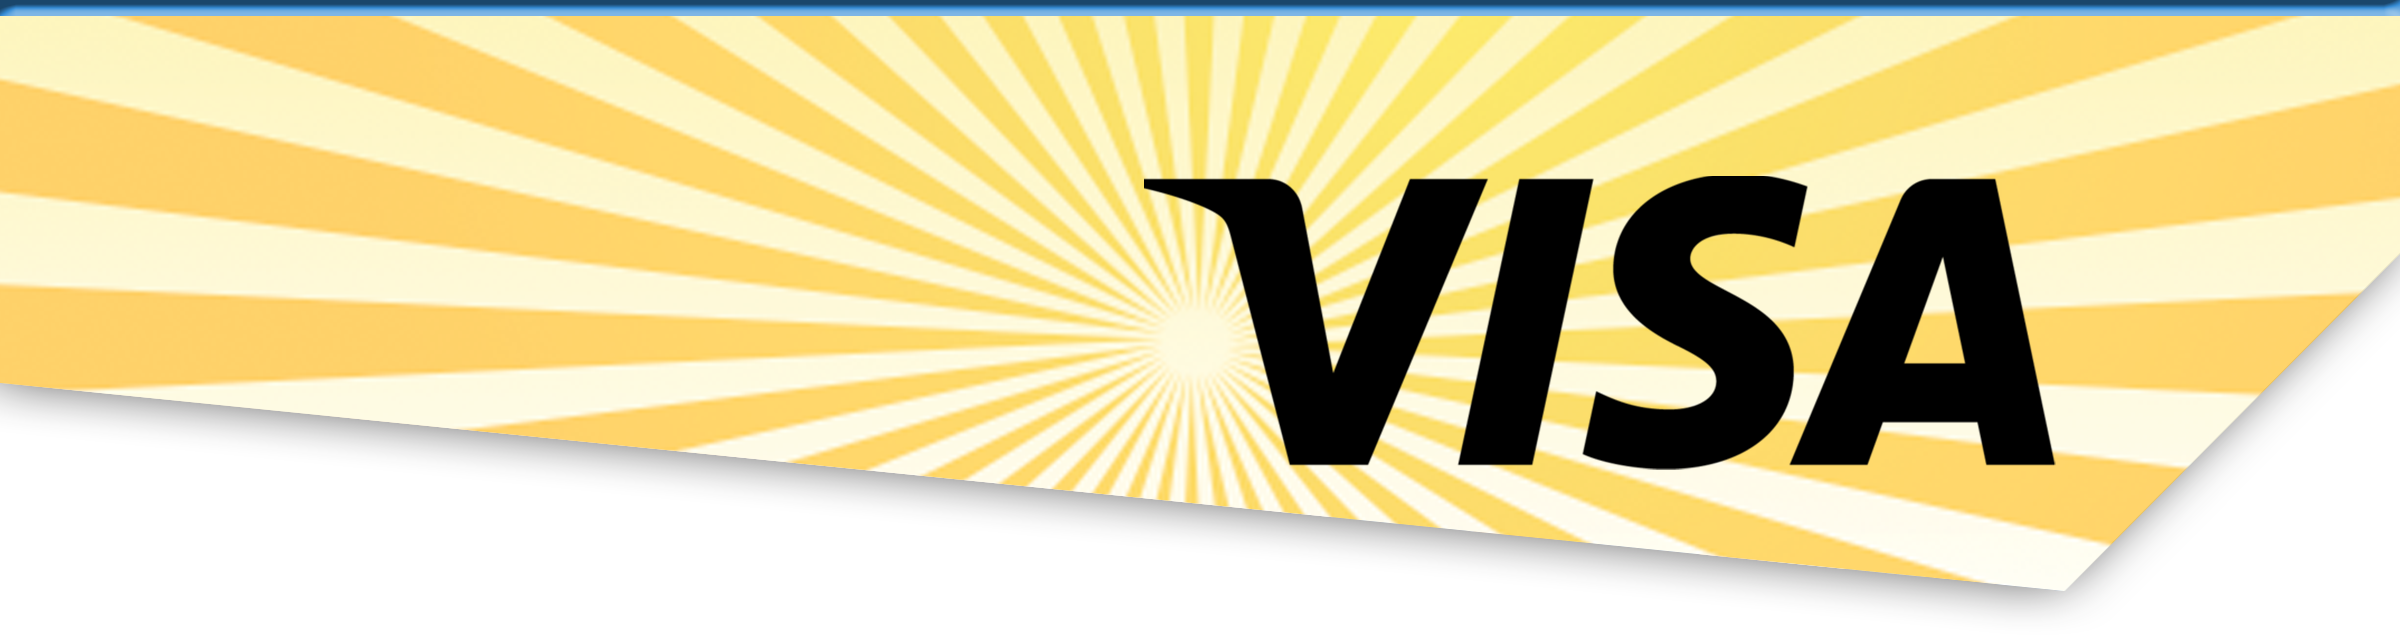 VISA logo over sun and rays.